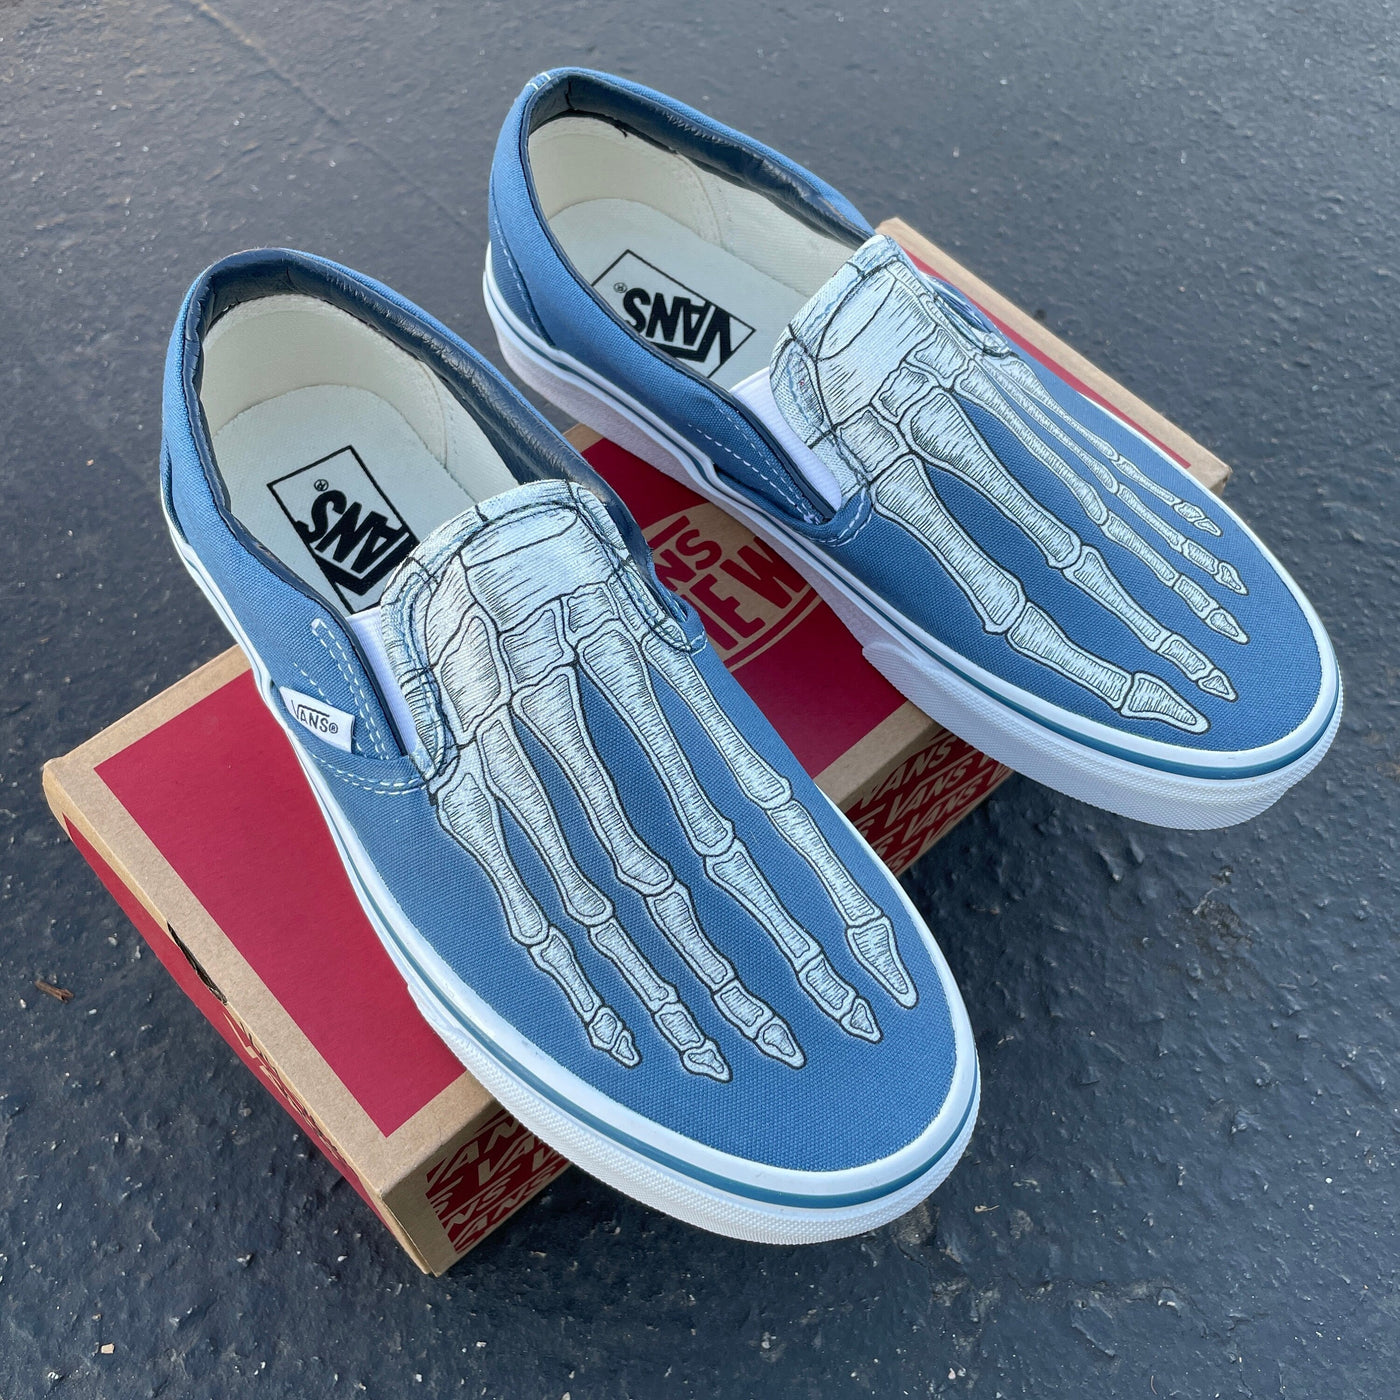 Custom Skeleton Feet X Ray Navy Slip On Vans Shoes for Men and Women